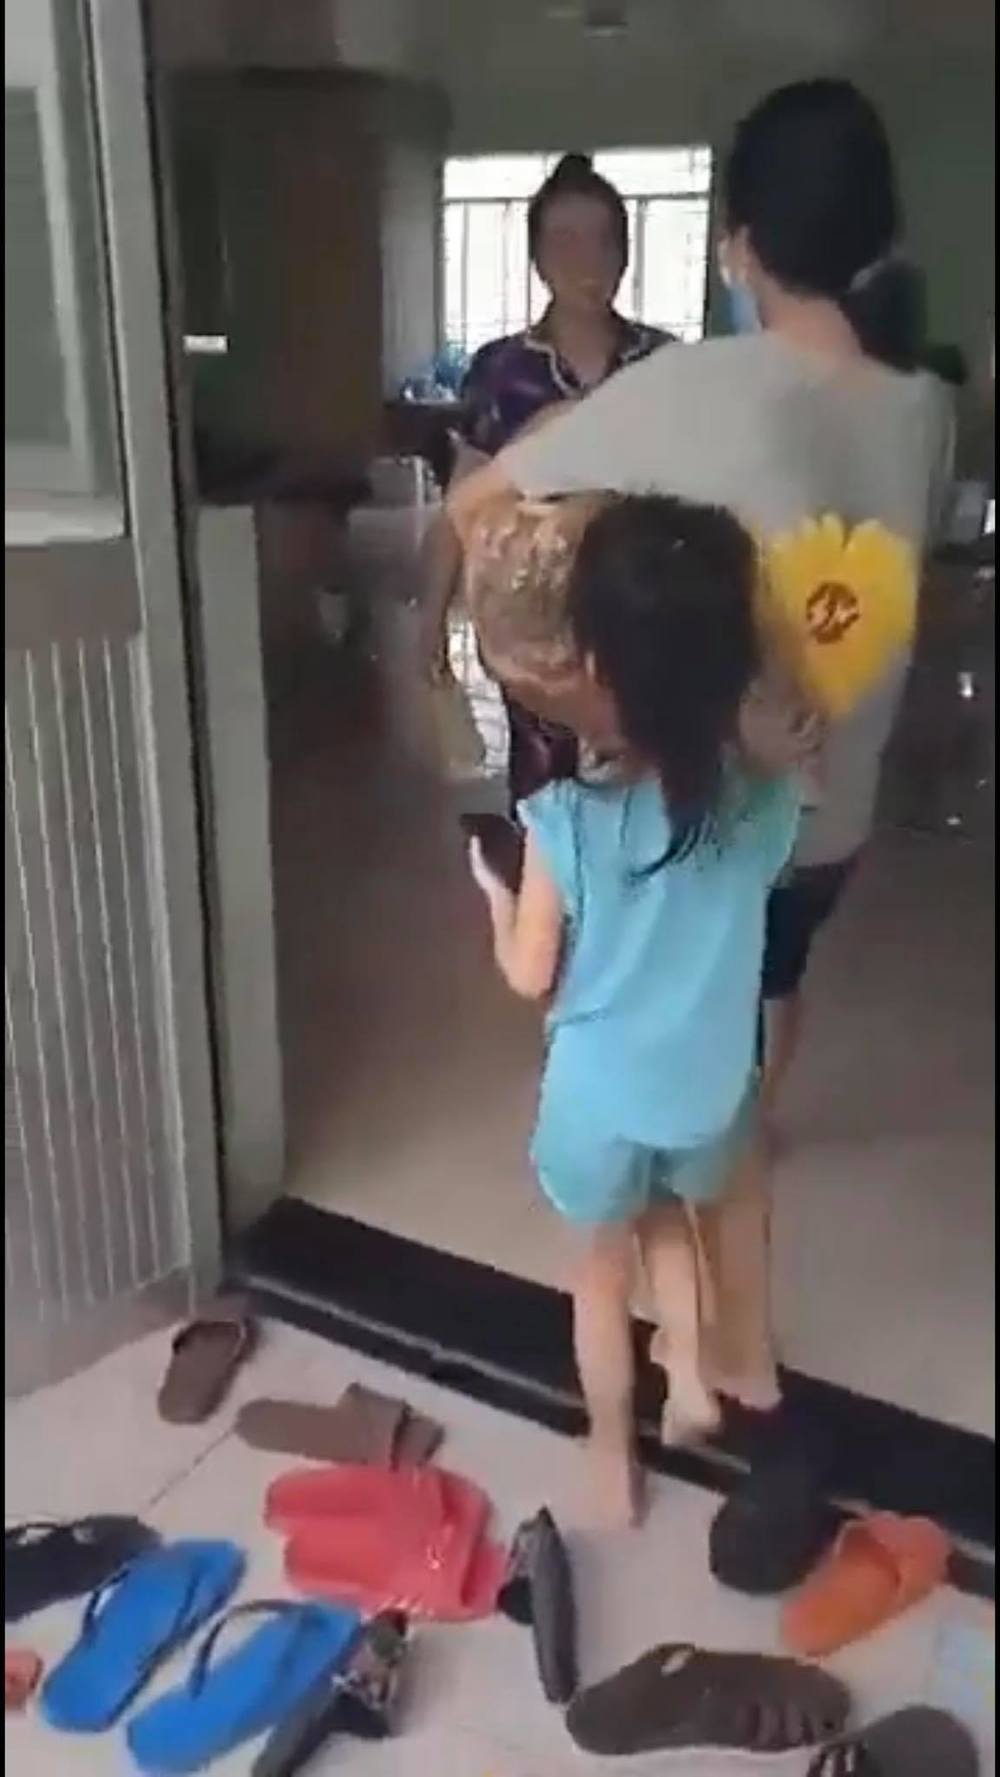  
Cô bé lớn thấy mẹ từ ngoài cửa liền vô cùng vui mừng. (Ảnh: Chụp màn hình)